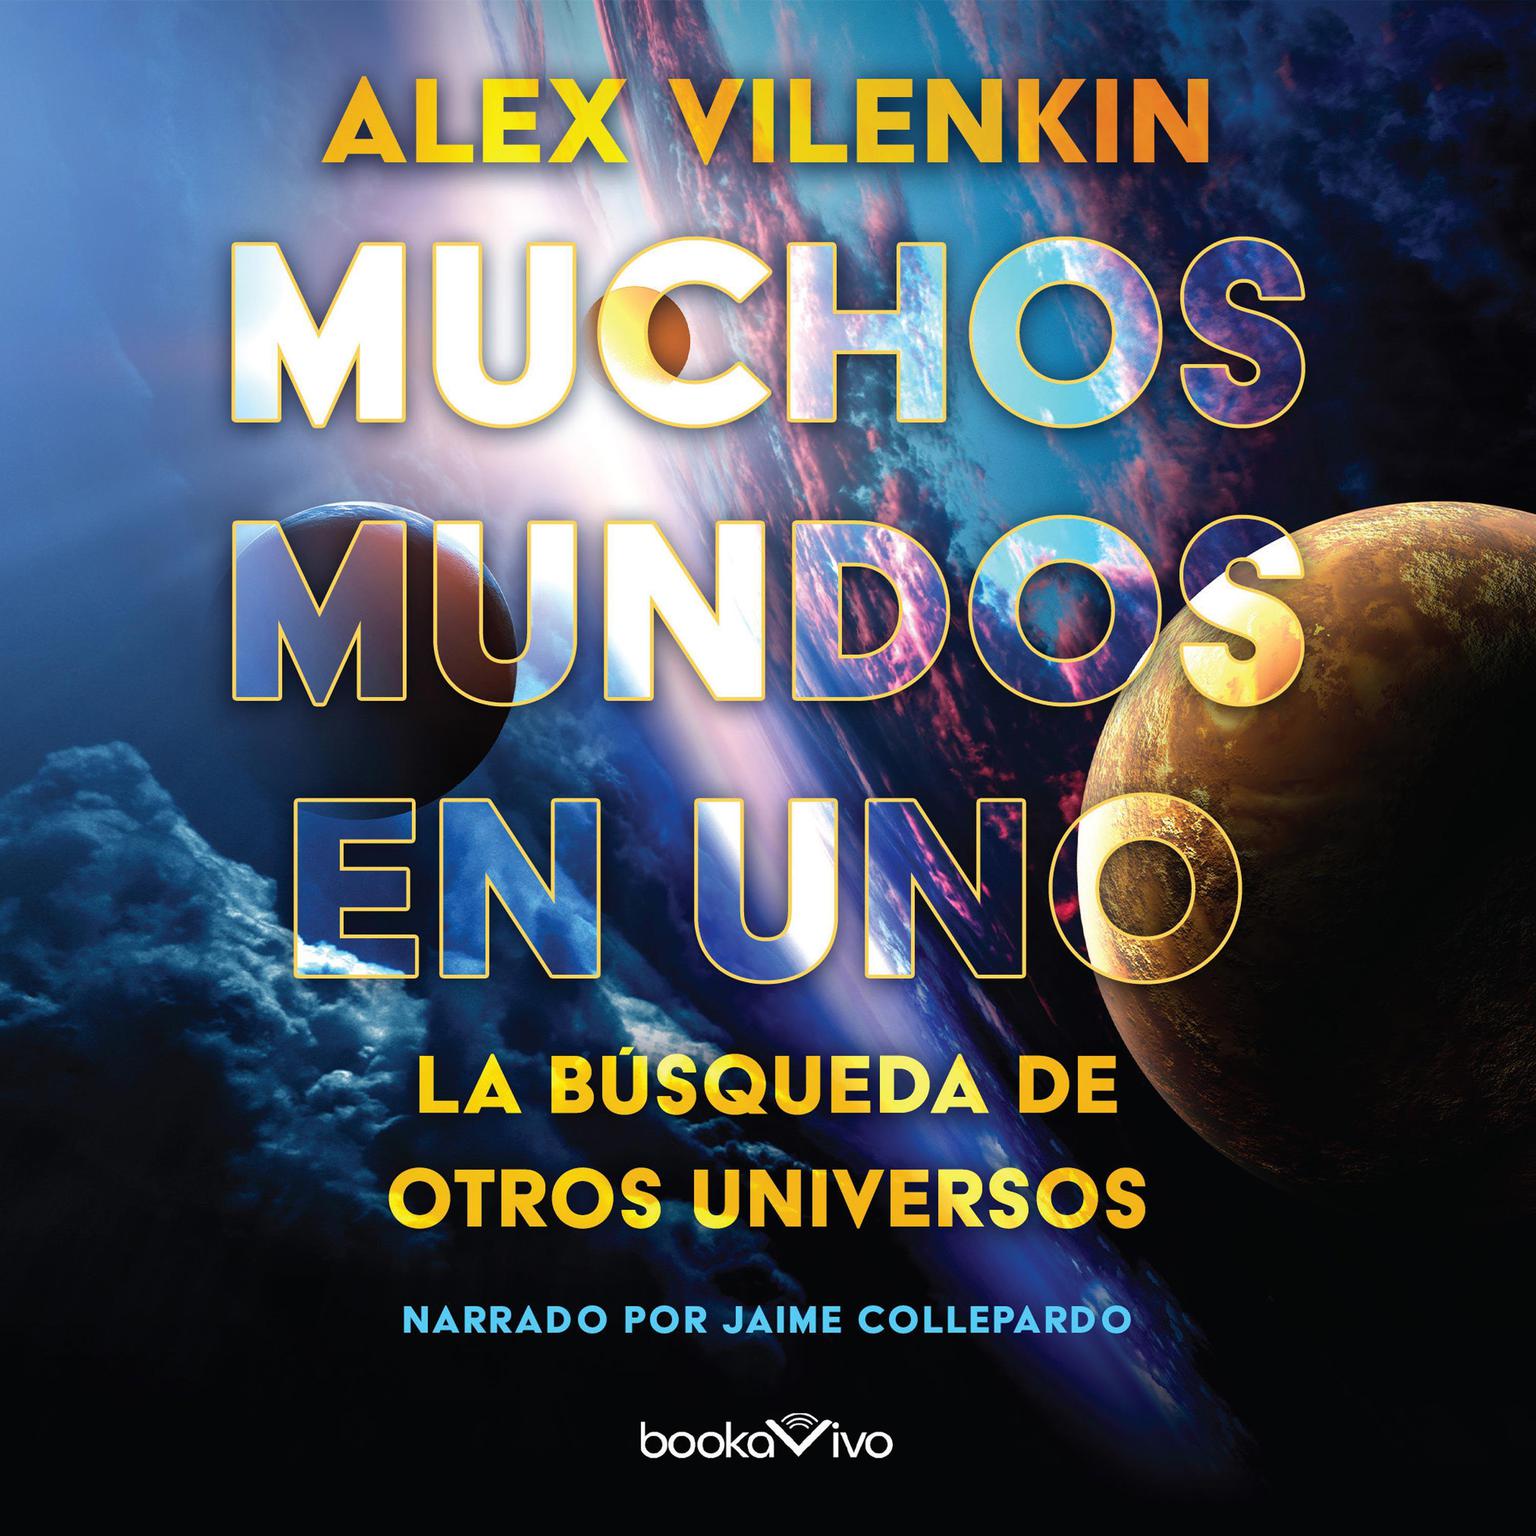 Muchos mundos en uno: La busqueda de otros universos (The Search for Other Universes) Audiobook, by Alex Vilenkin